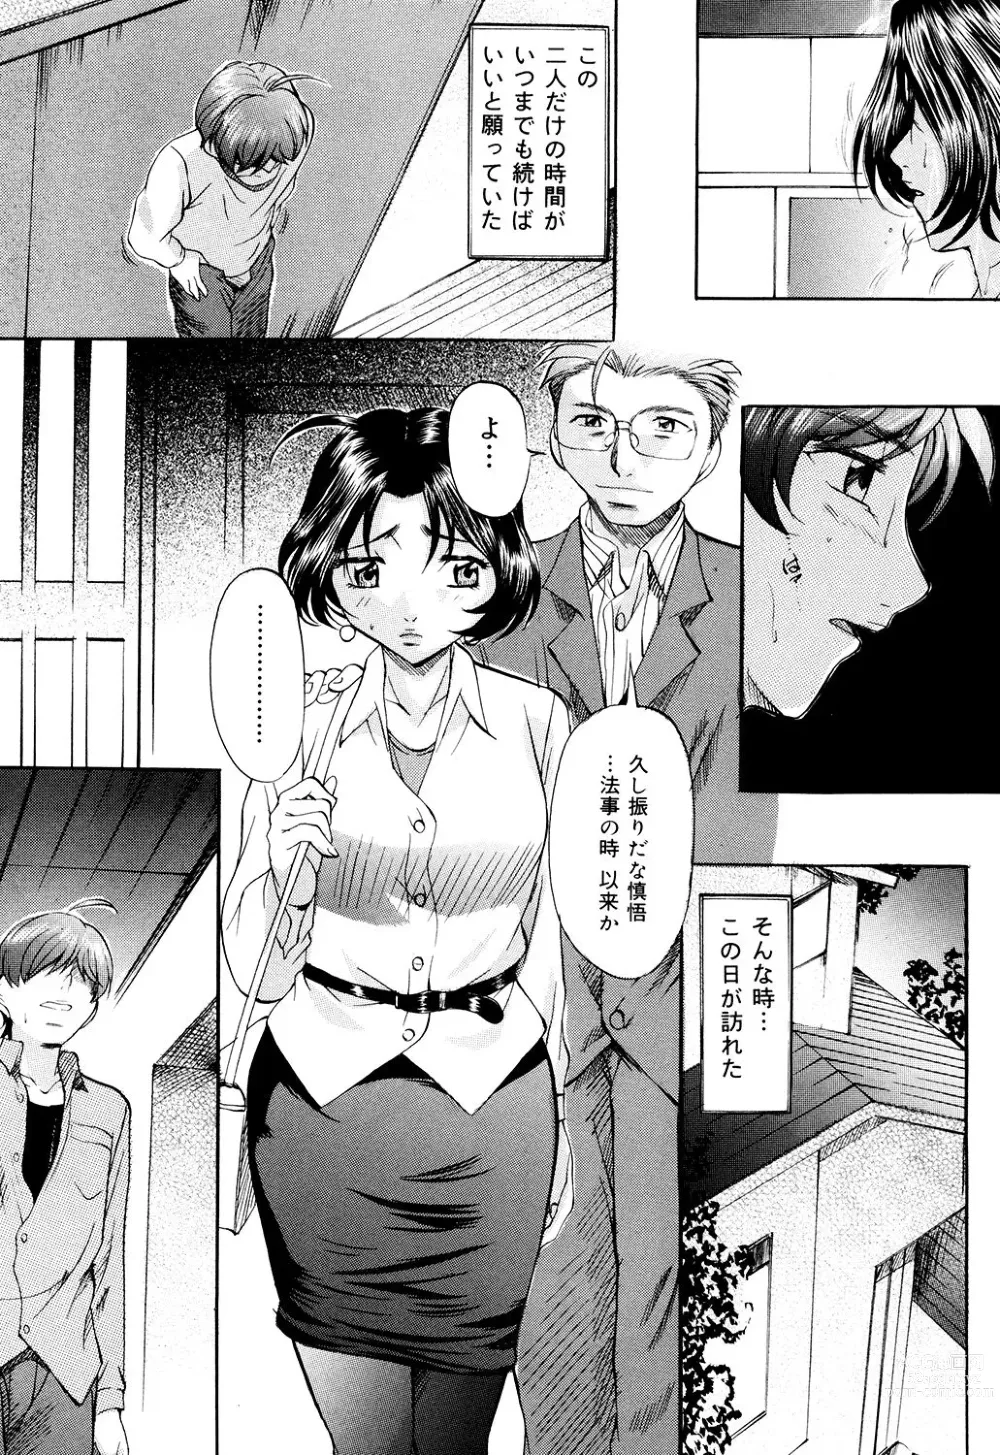 Page 9 of manga Daen Boshi